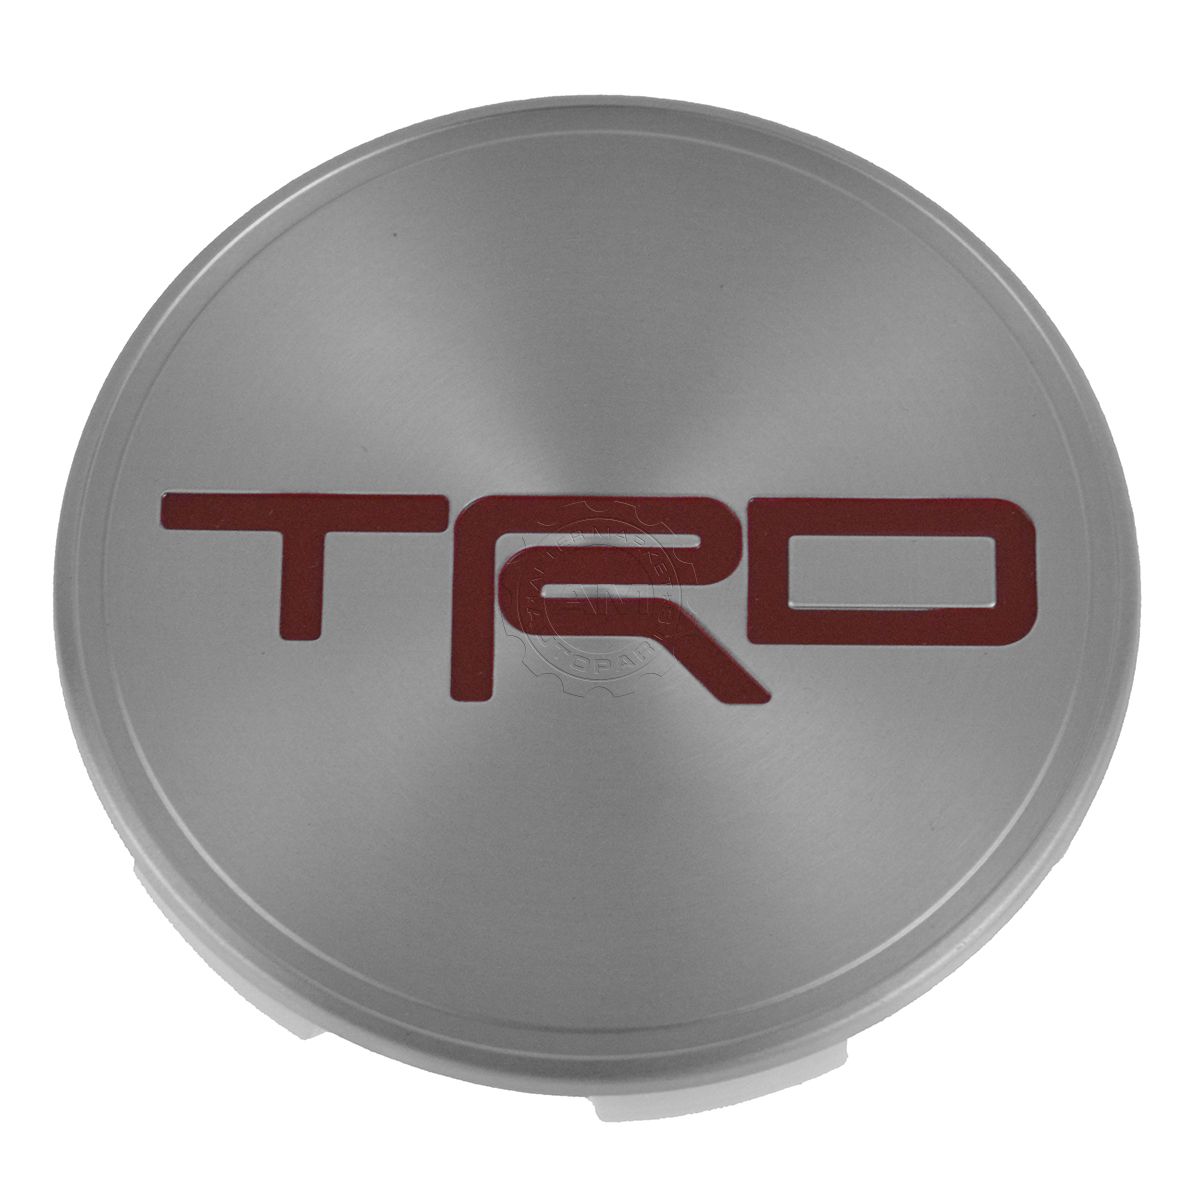 OEM PTR18-34071 Center Cap 17" Wheel Cover for Toyota TRD Tacoma FJ